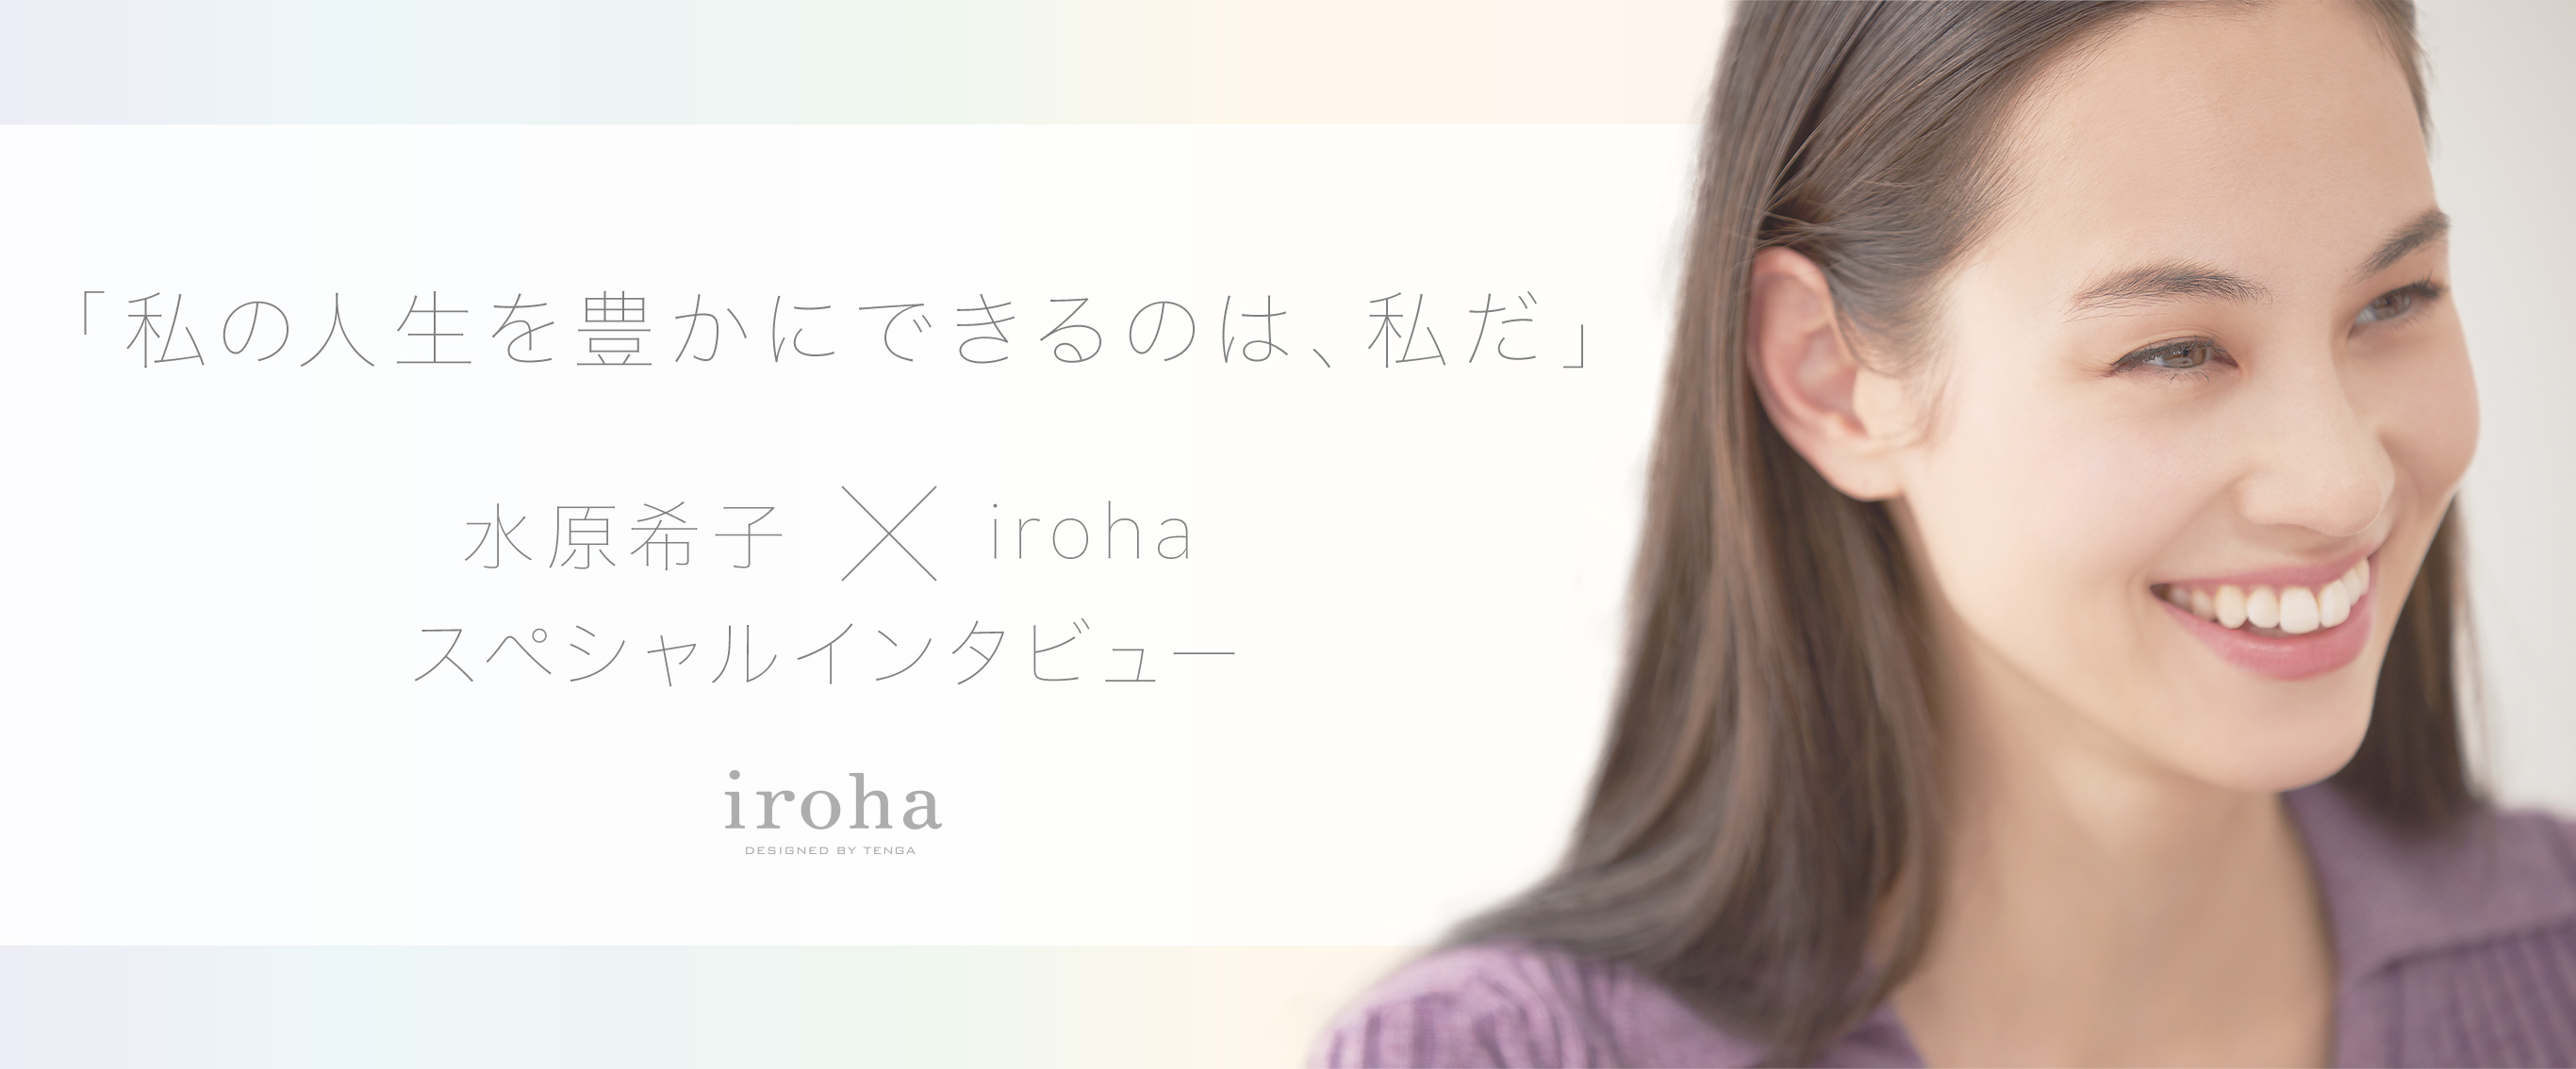 「私の人生を豊かにできるのは、私だ」水原希子×iroha スペシャルインタビュー